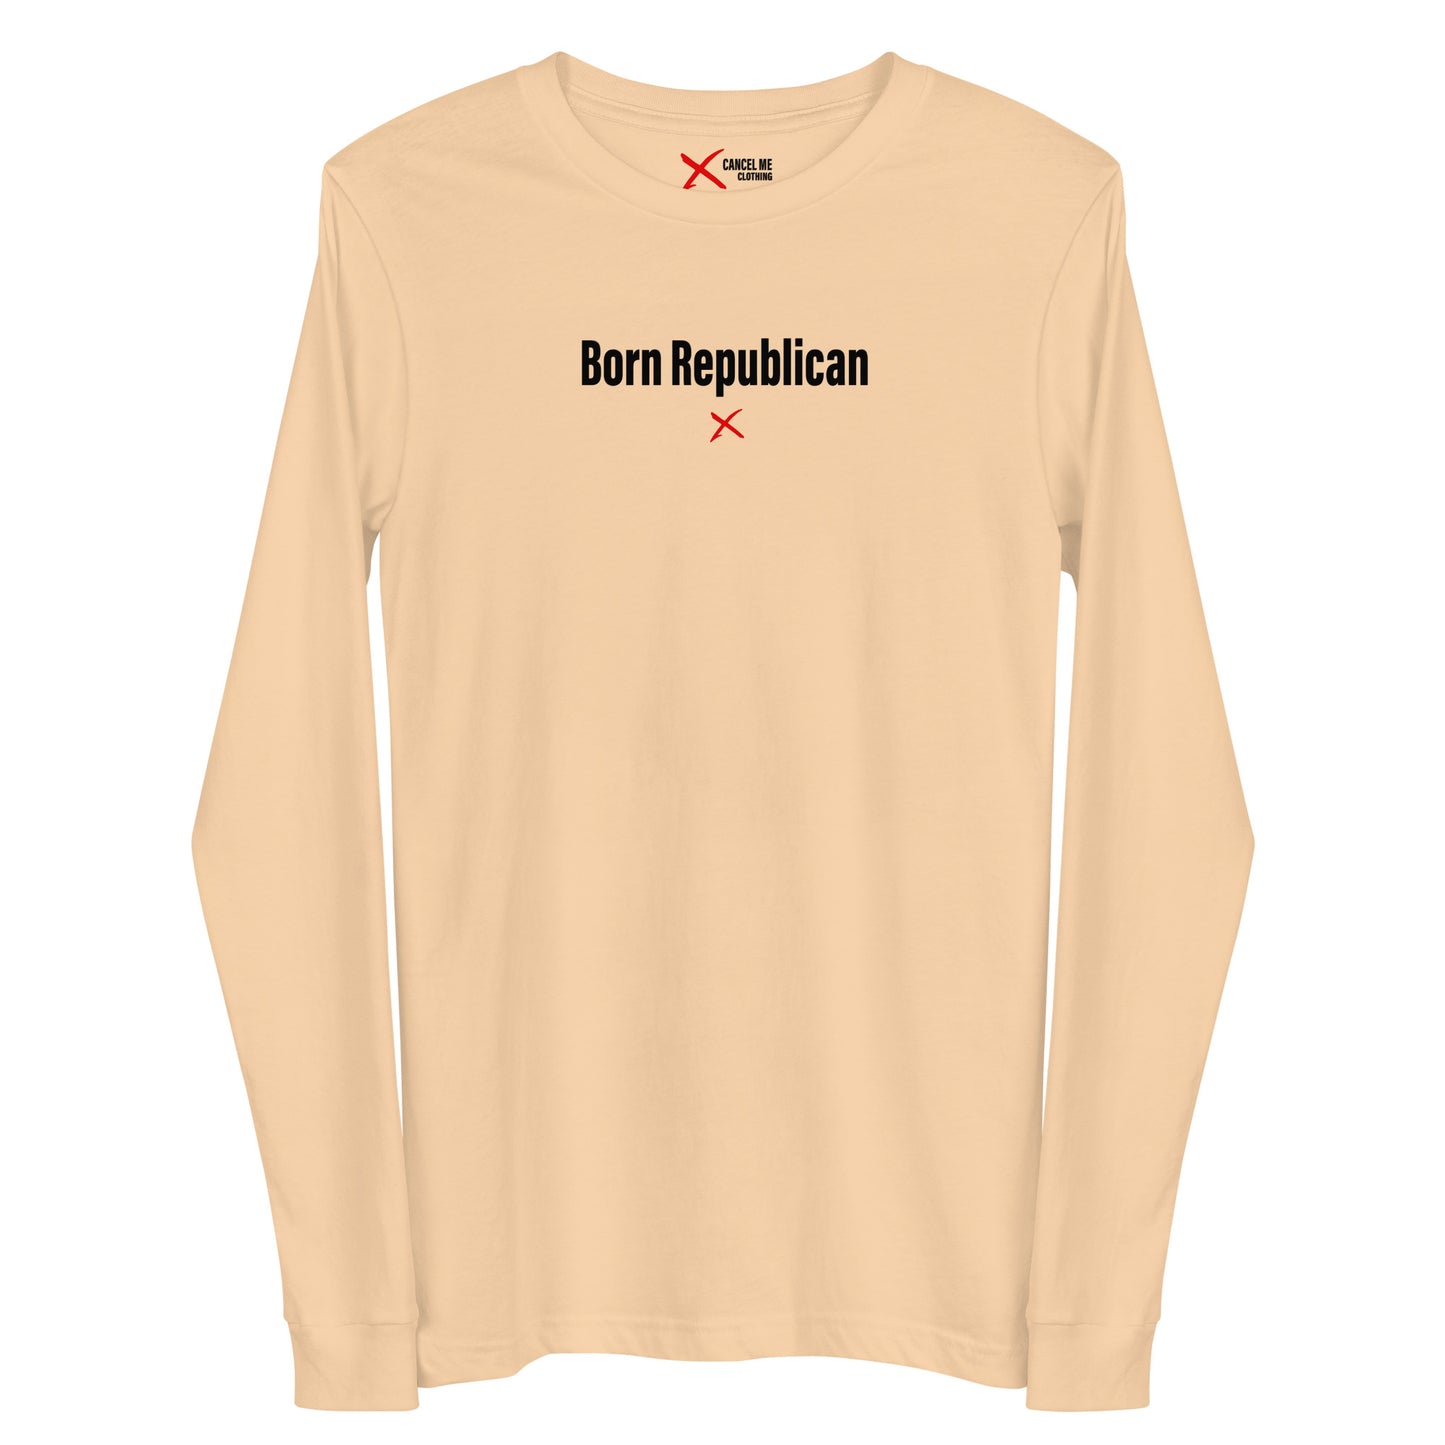 Born Republican - Longsleeve